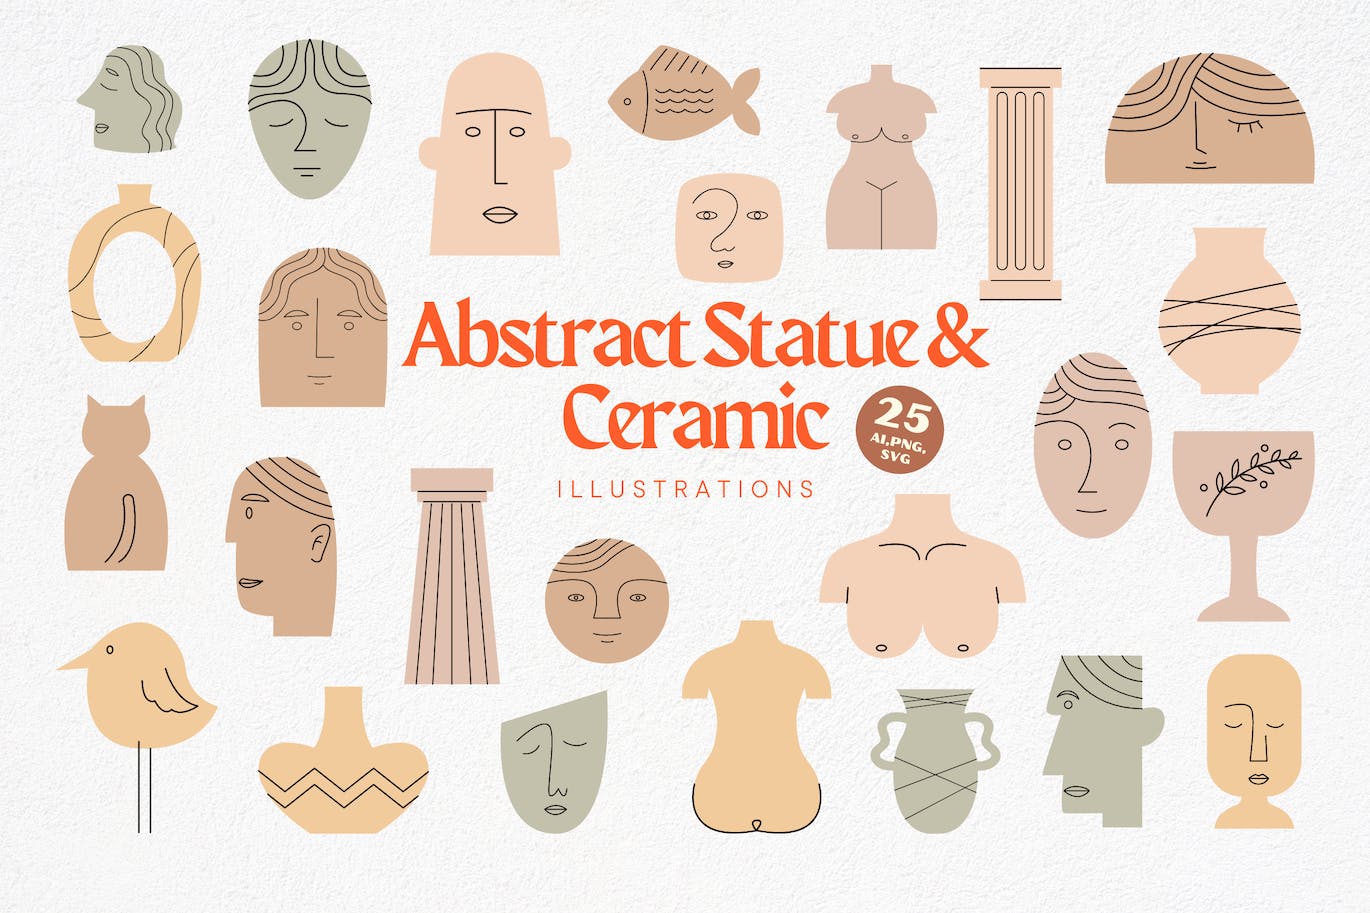 抽象雕像和陶瓷插画 Abstract Statue & Ceramic Illustrations-1